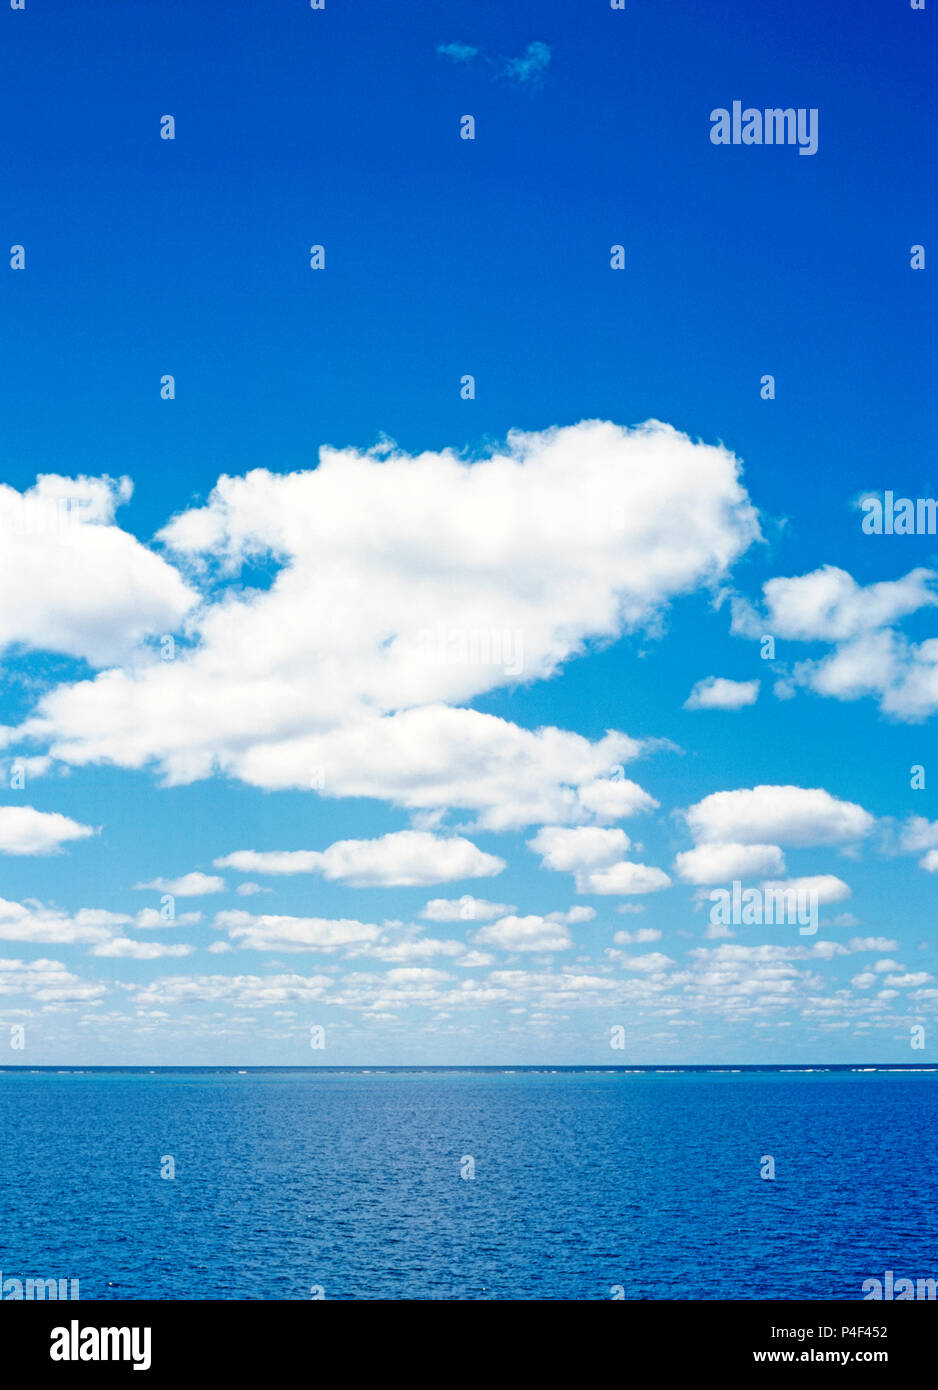 El cielo azul con nubes blancas mullidas sobre el Oceano Pacifico horizonte de la Gran Barrera de Coral, Queensland, Australia. Foto de stock